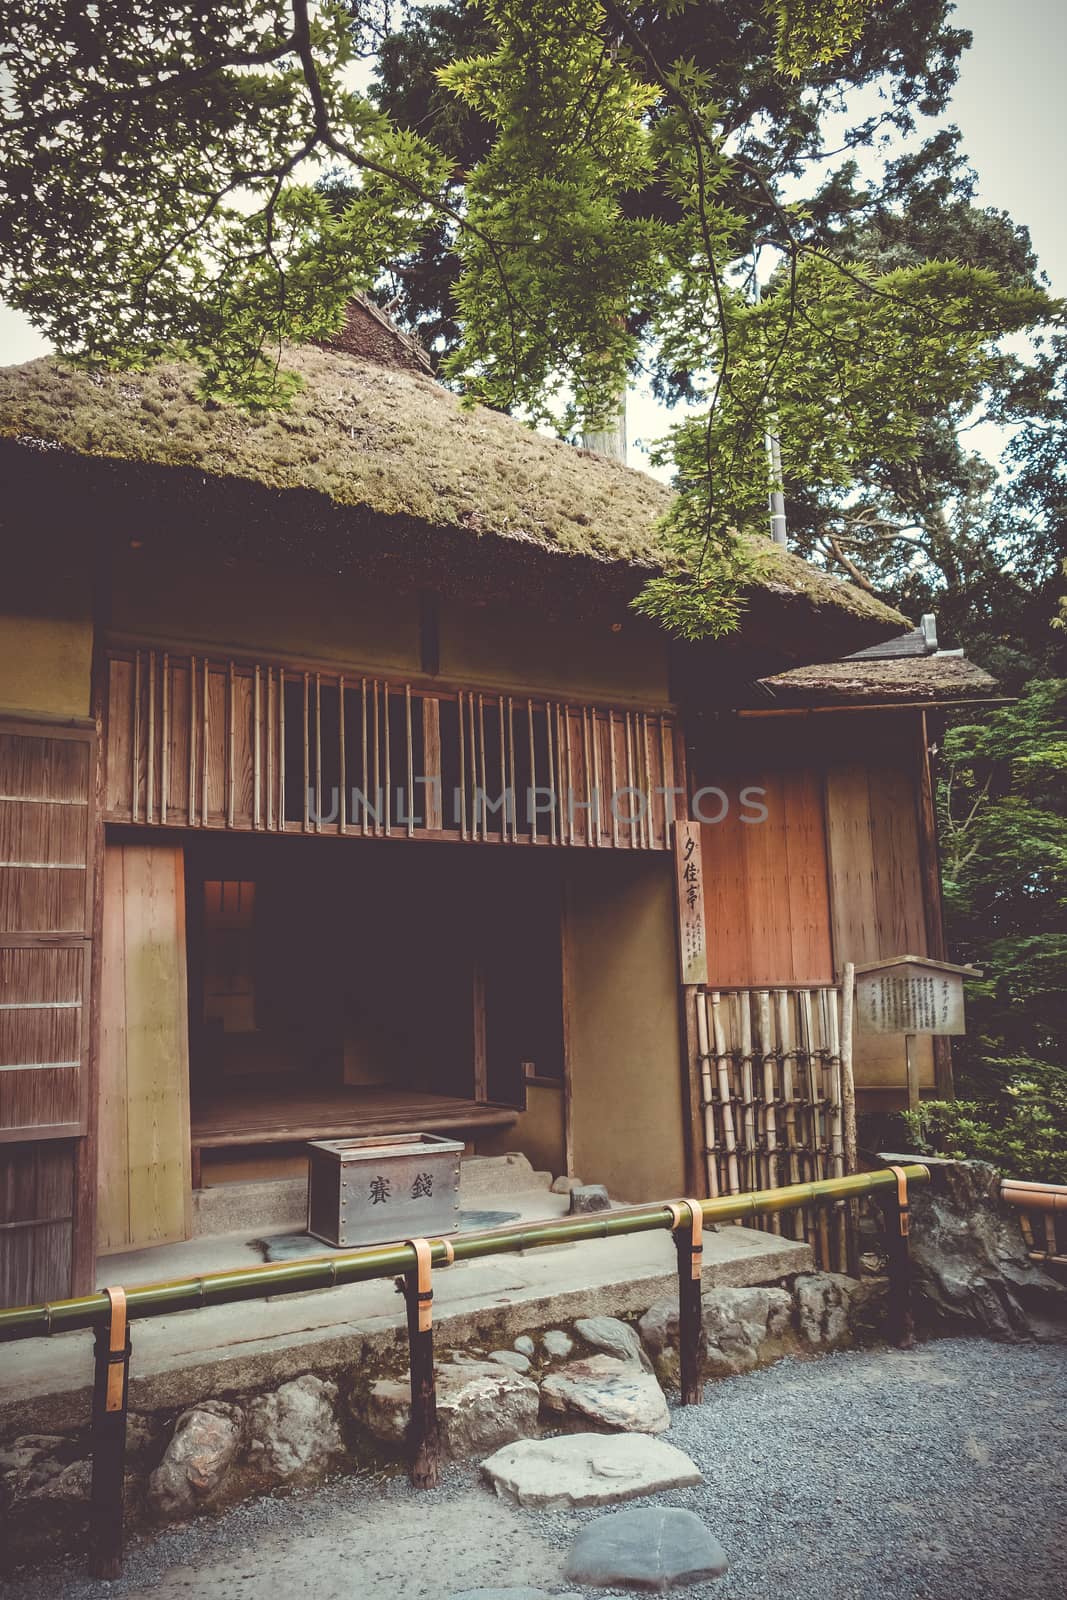 Building in Kinkaku-ji temple, Kyoto, Japan by daboost